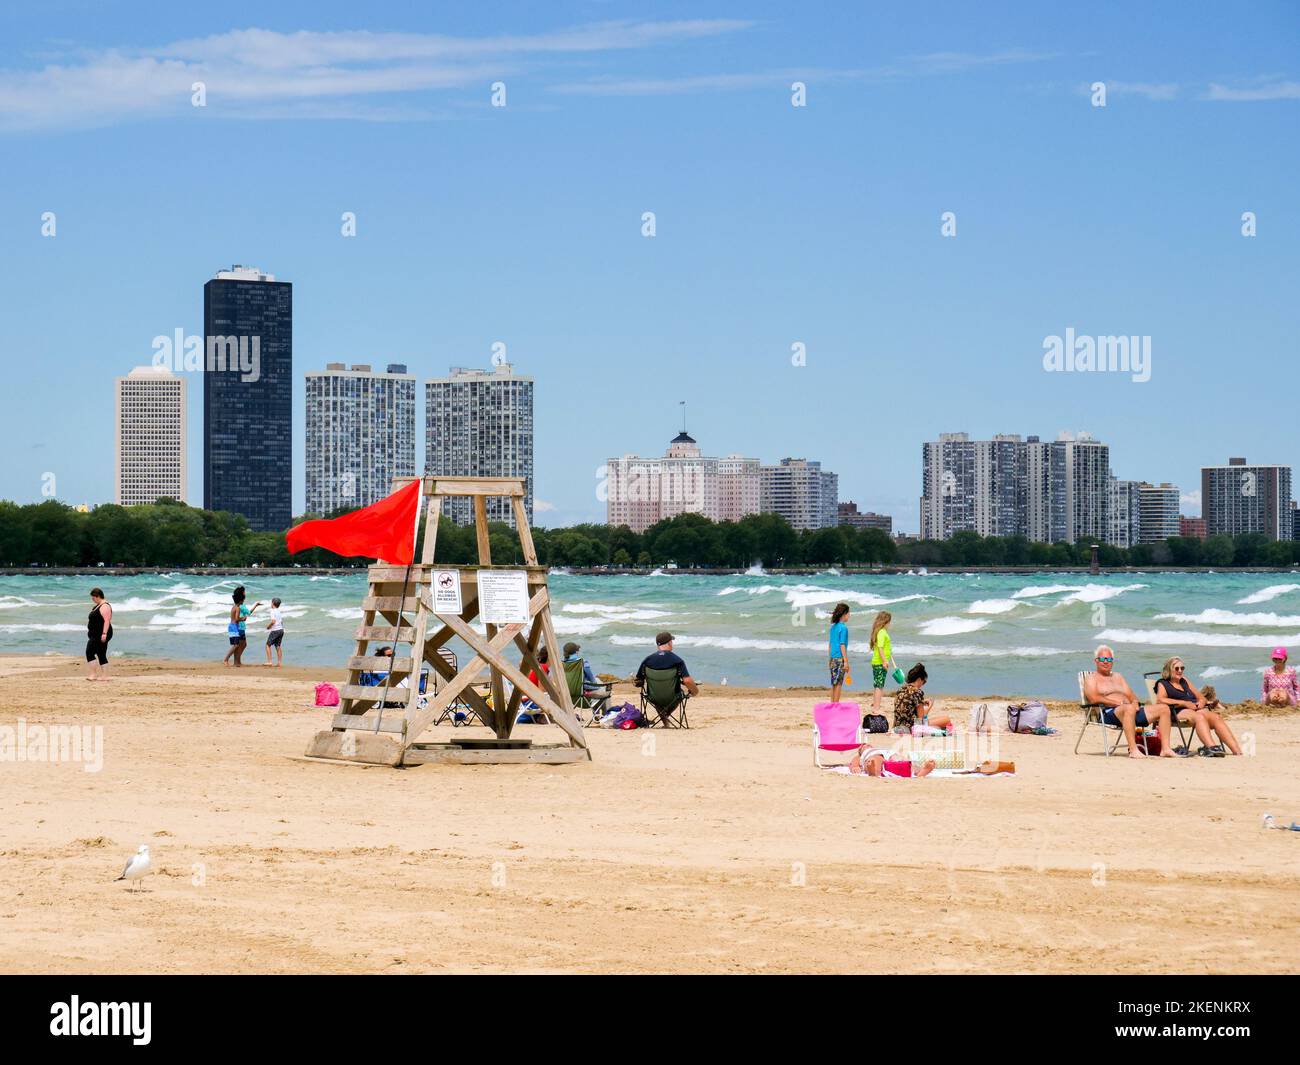 Strandgänger am Montrose Beach, Chicago, Illinois. Die rote Flagge weist darauf hin, dass aufgrund der rauhen Brandung kein Schwimmen erlaubt ist. Stockfoto